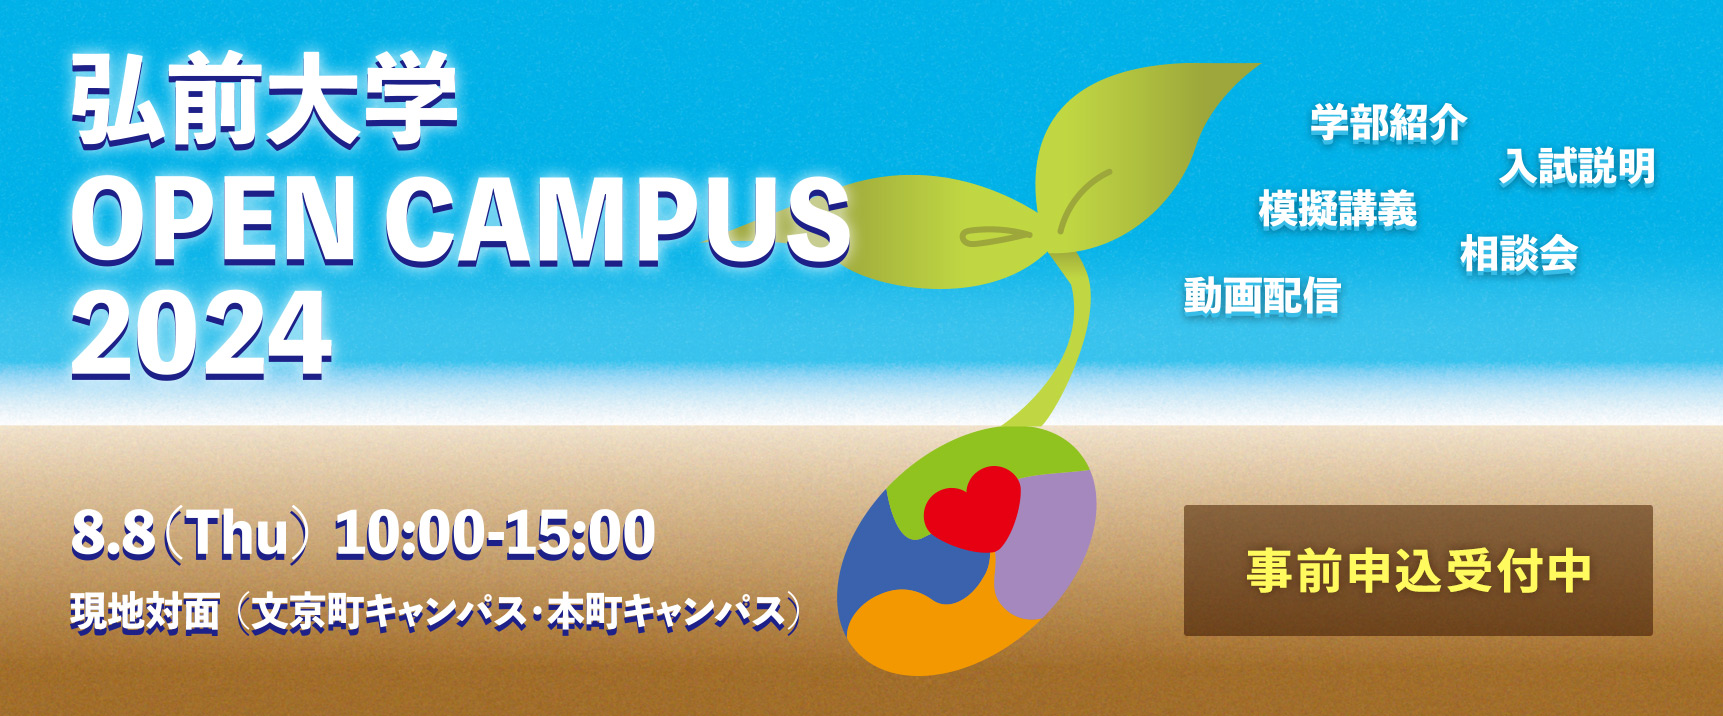 弘前大学オープンキャンパス2024